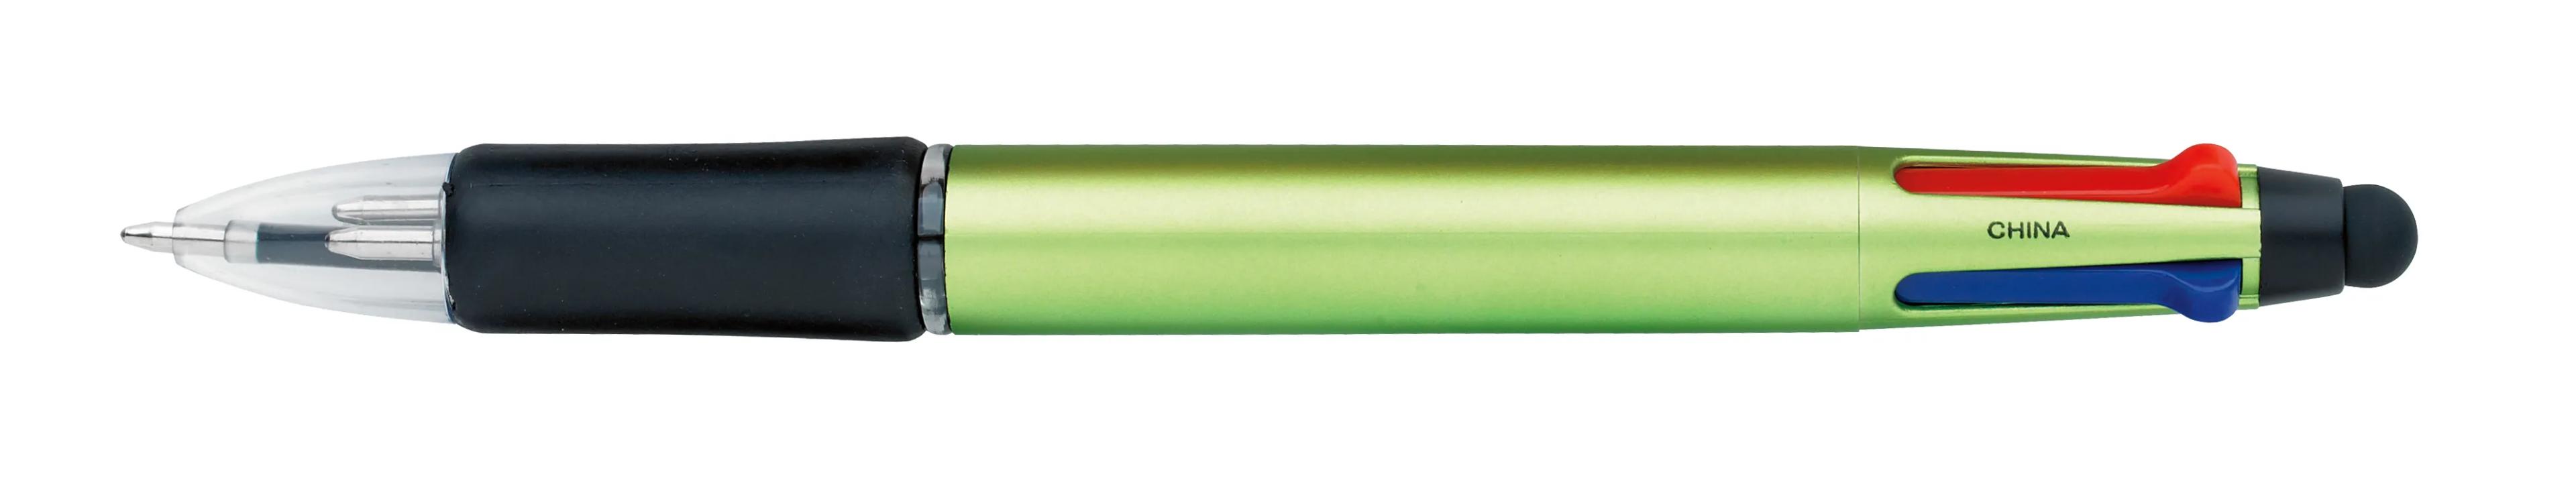 Orbitor Metallic Stylus Pen 4 of 56